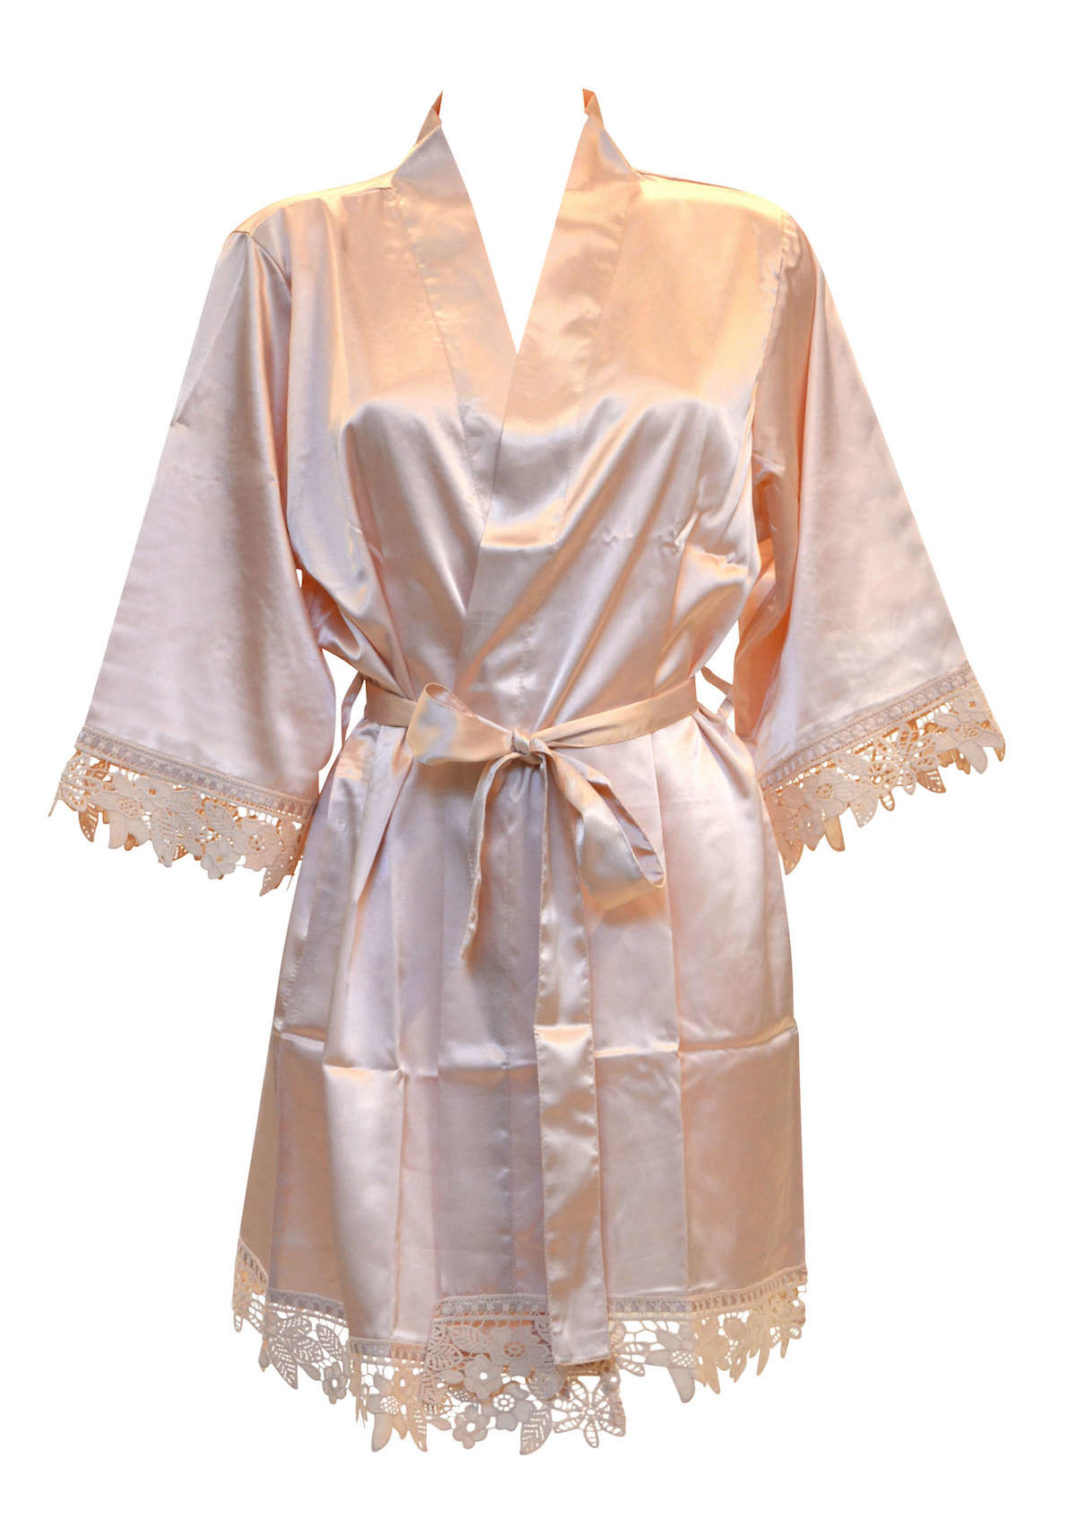 Silkeslen Kimono Morgonrock för brud och bröllop till möhippa och honeymoon - TopLady